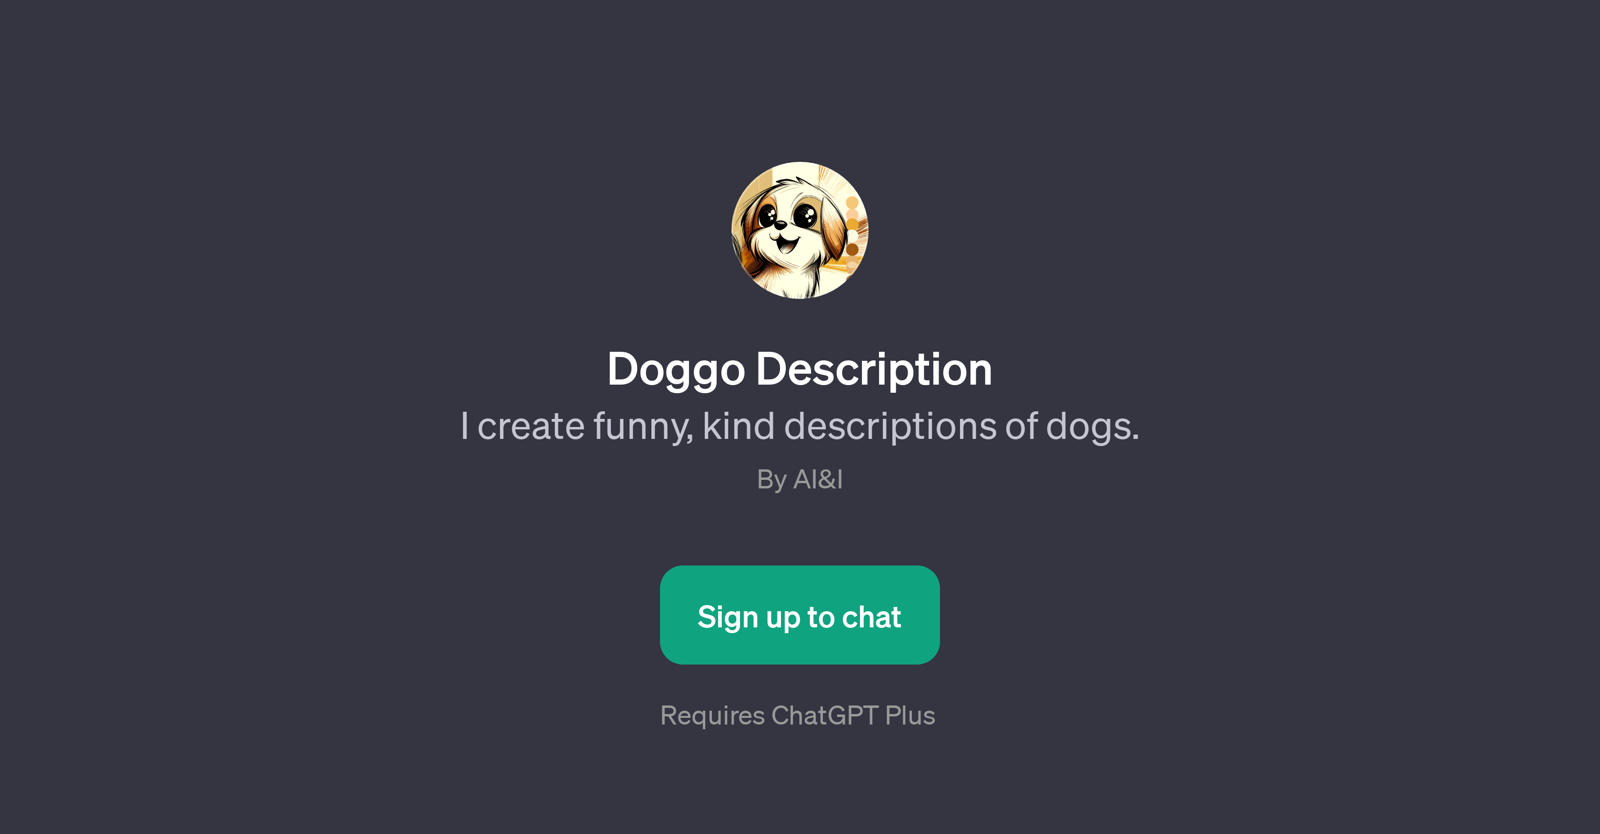 Doggo Description website